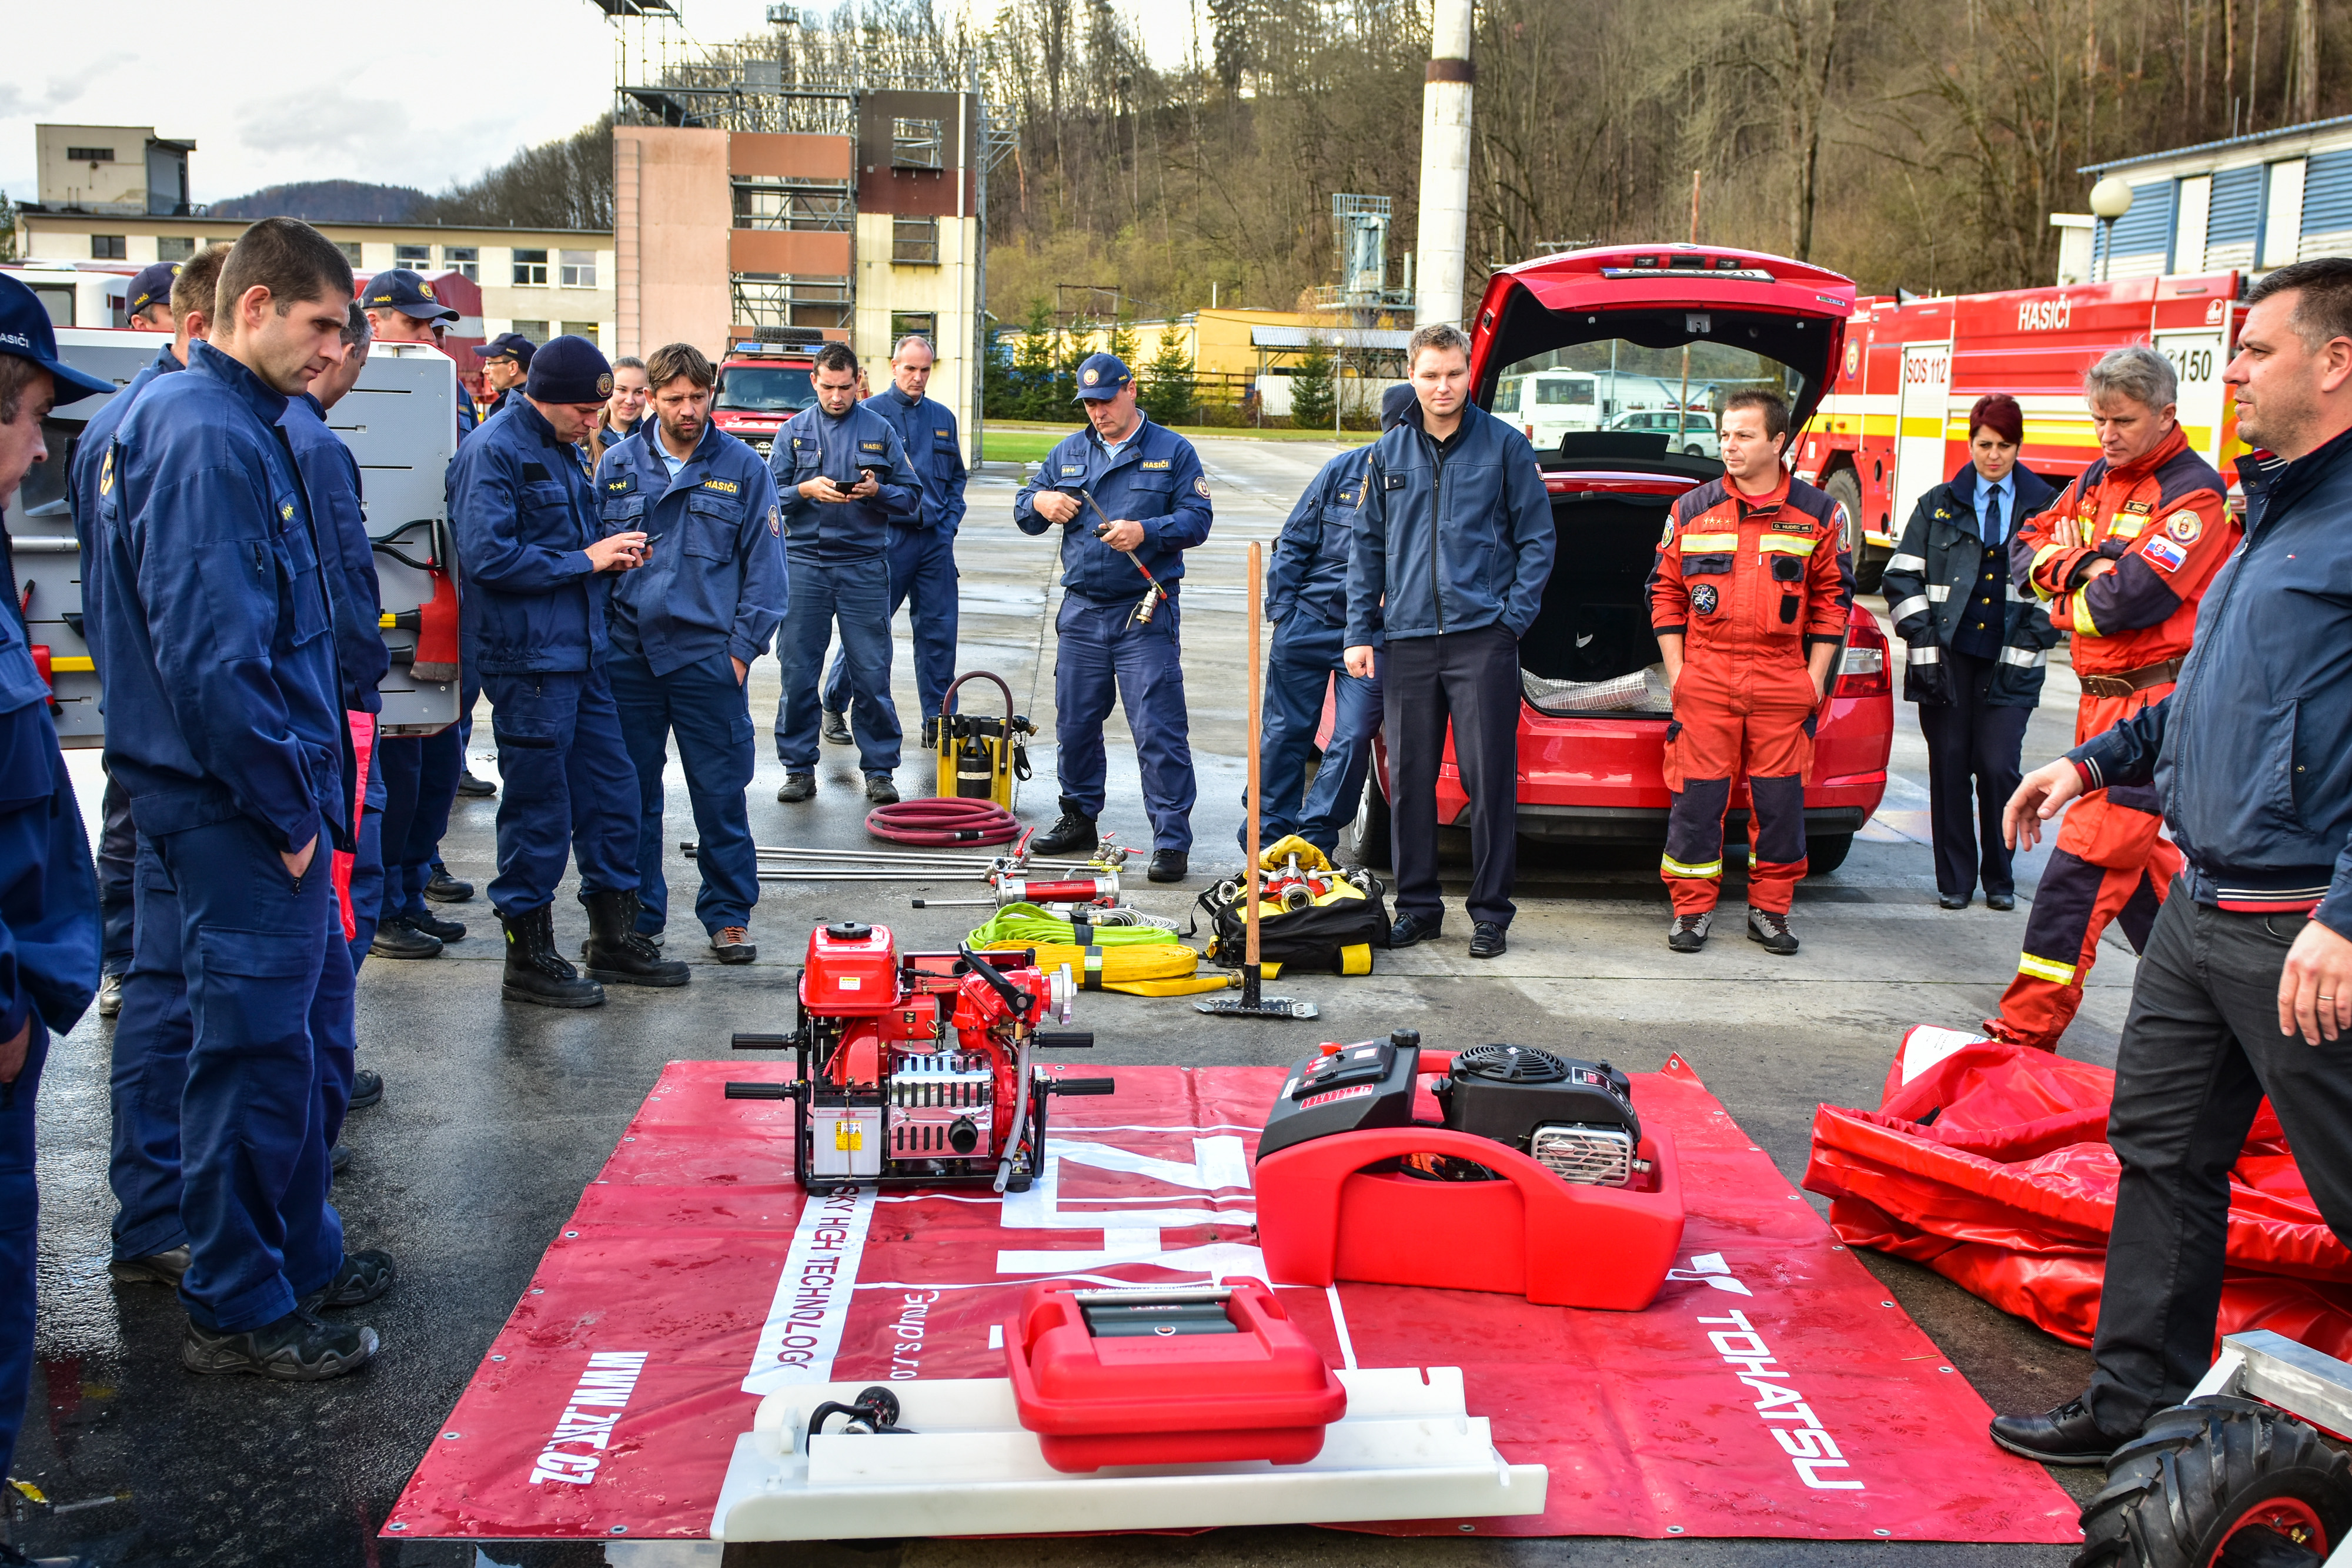 05 - Českí hasiči prezentovali vozík na hasenie v nedostupnom teréne